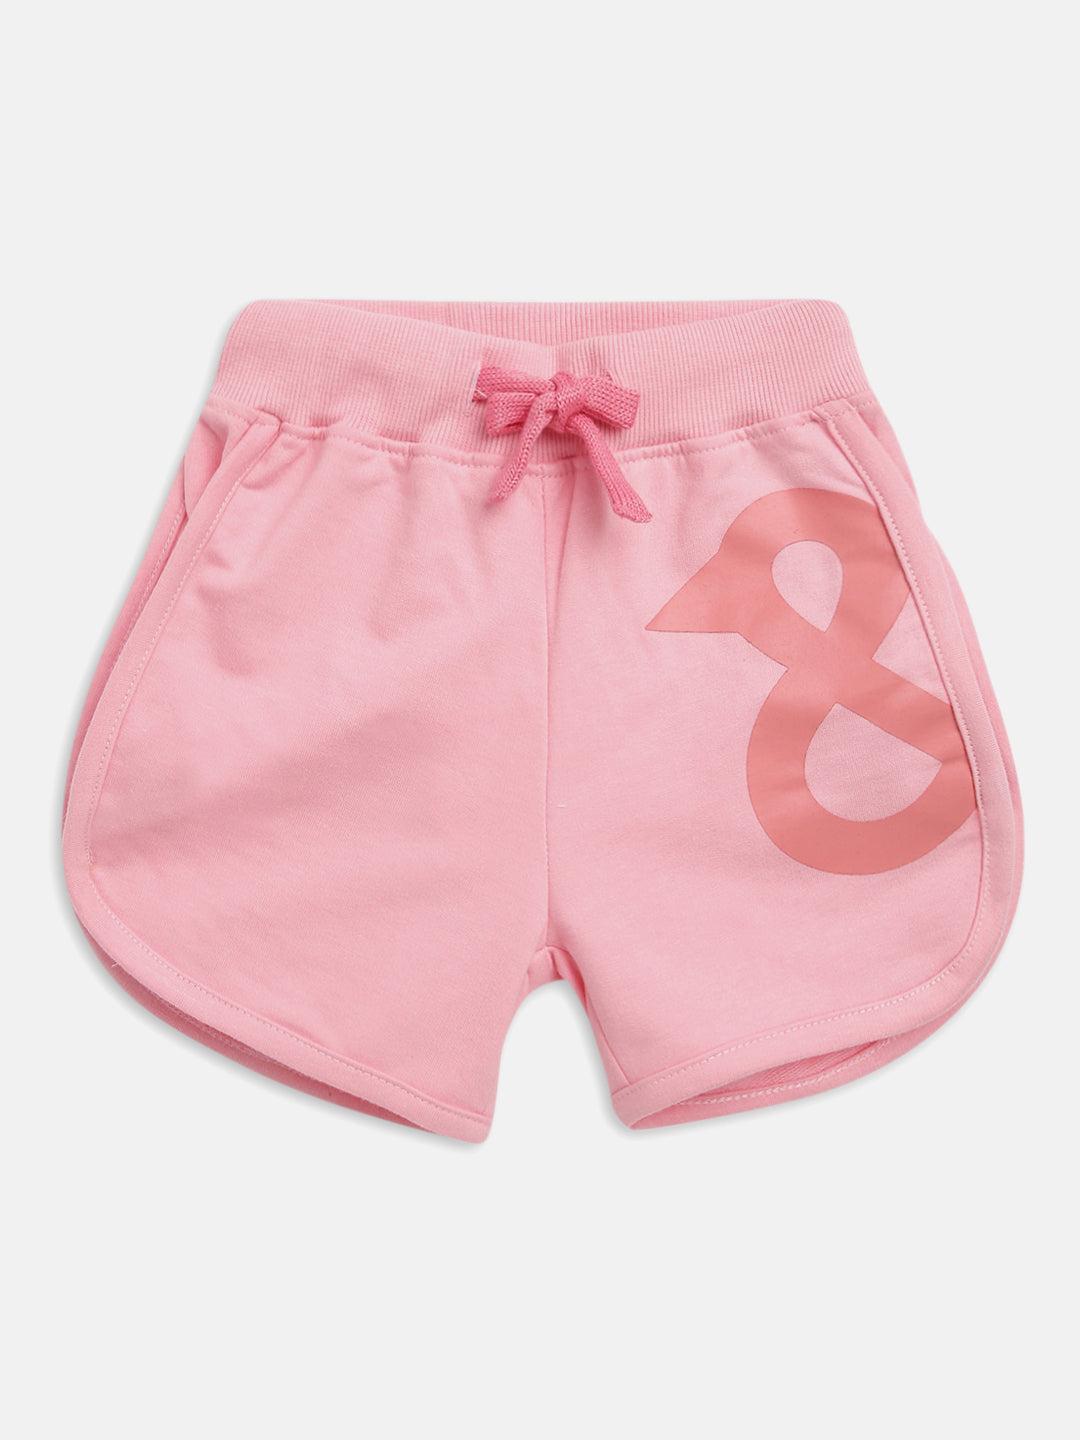 girls-pink-cotton-shorts